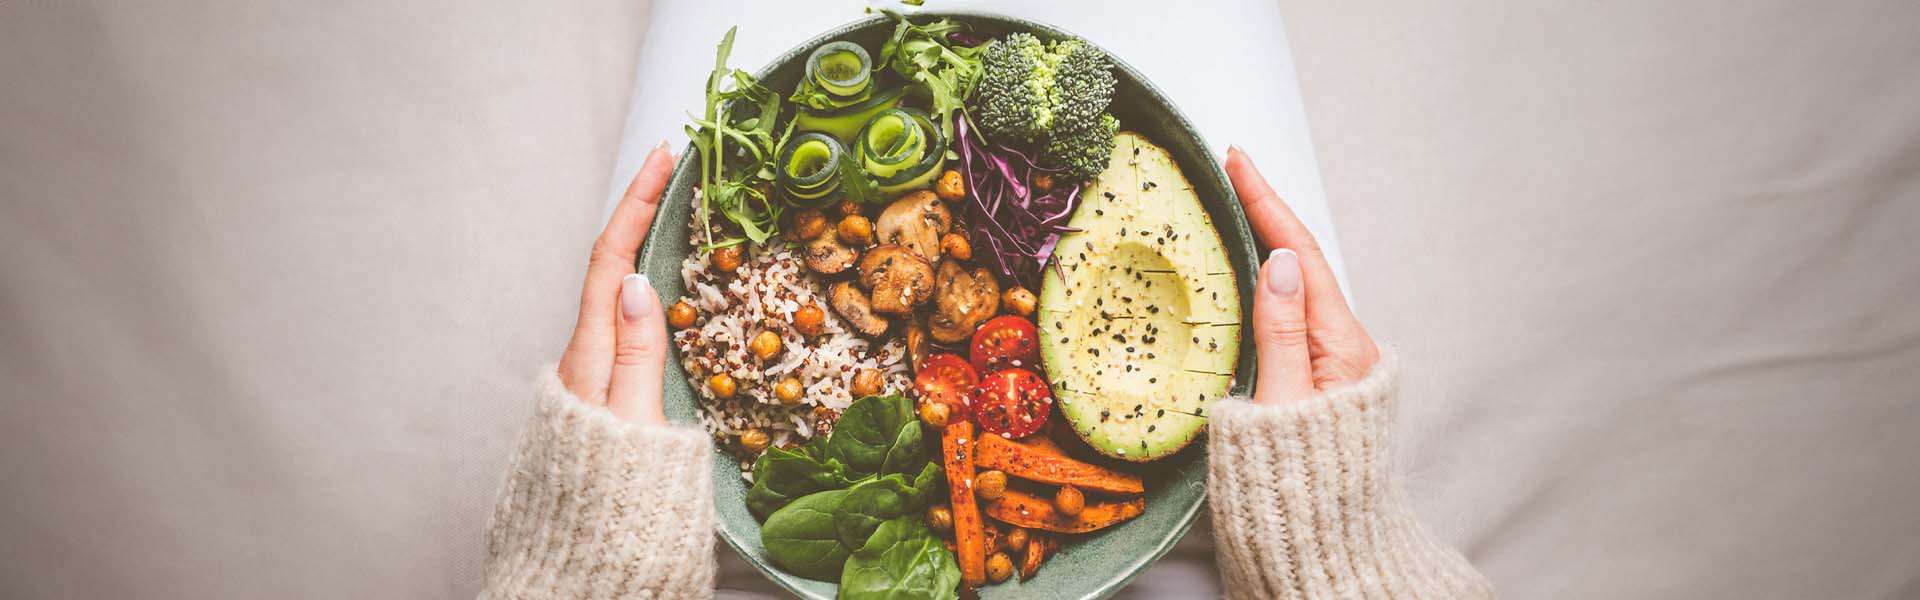 Avantages et inconvénients du régime végétalien | Yamamoto® Nutrition